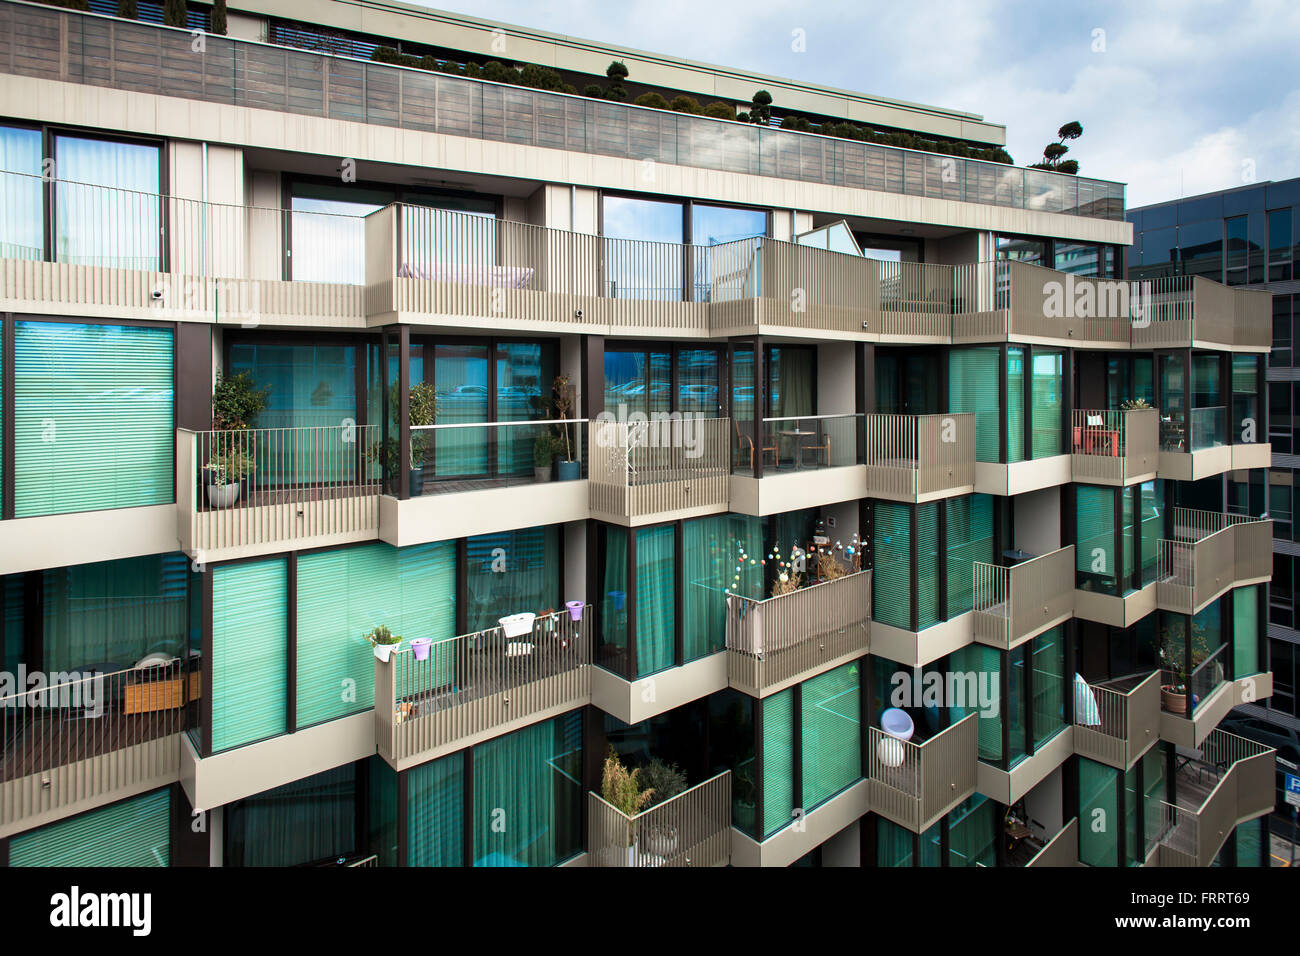 Europa, Deutschland, Nordrhein-Westfalen, Köln, das Apartment Gebäude K-Star Residence in der Straße Servasgasse im städtischen Stockfoto